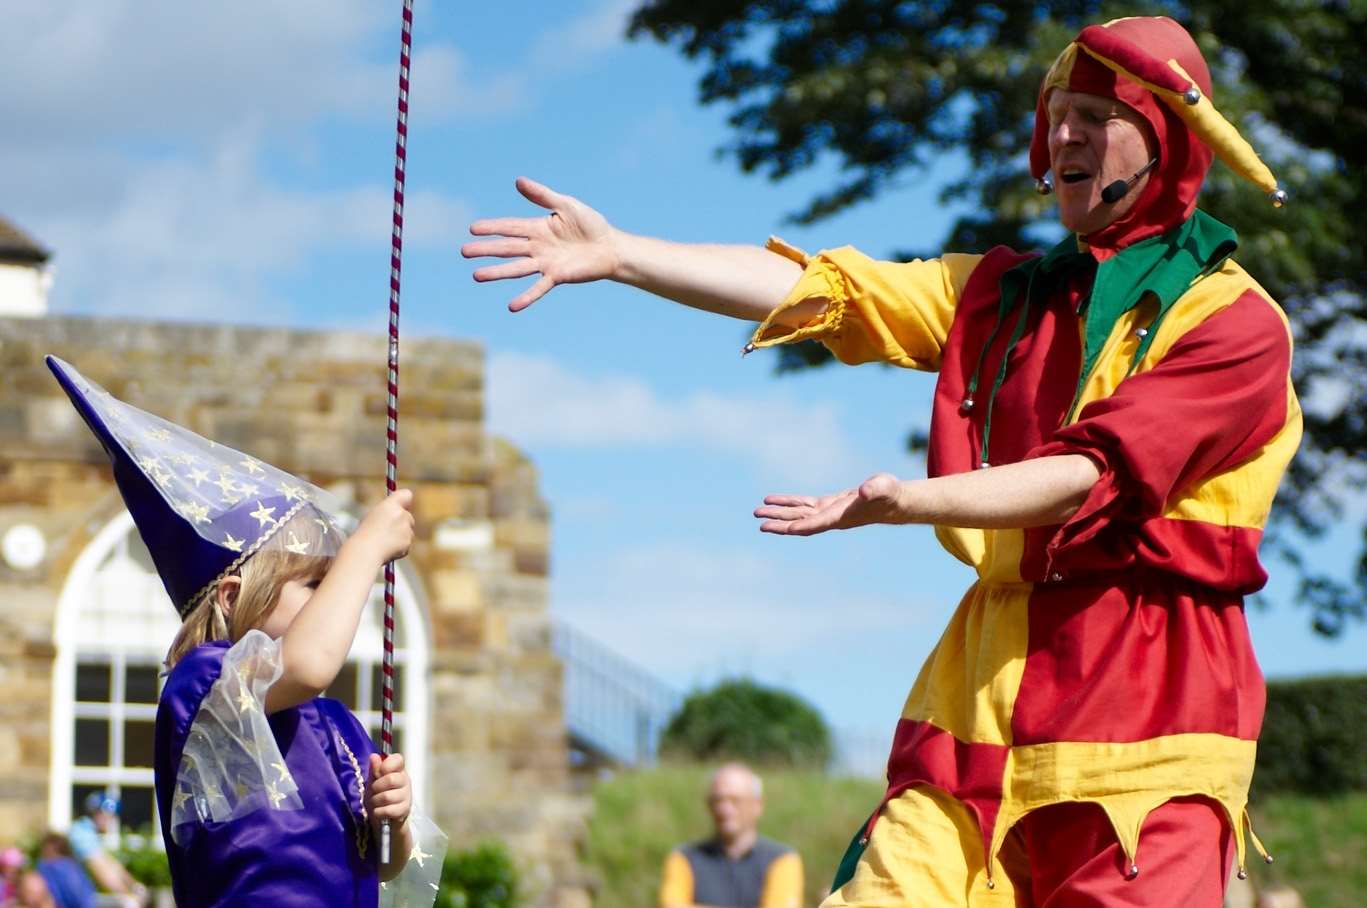 A Jester entertains at Tonbridge Castle